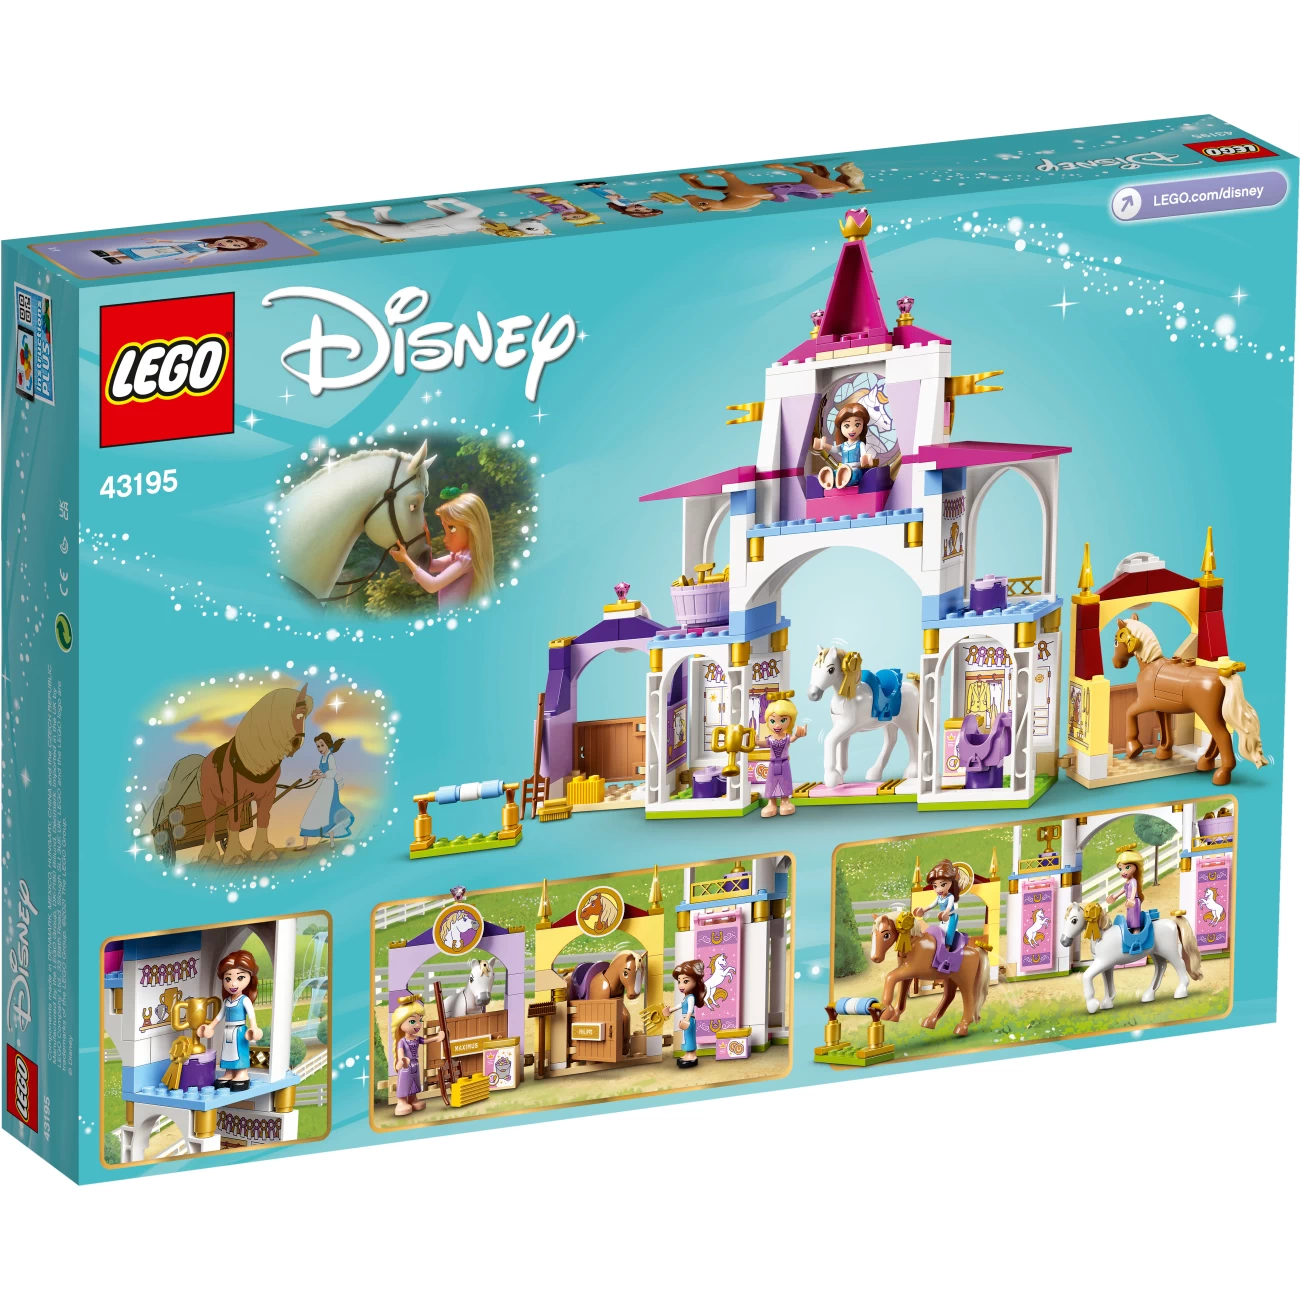 LEGO Disney Princess 43195 - Belles und Rapunzels königliche Ställe